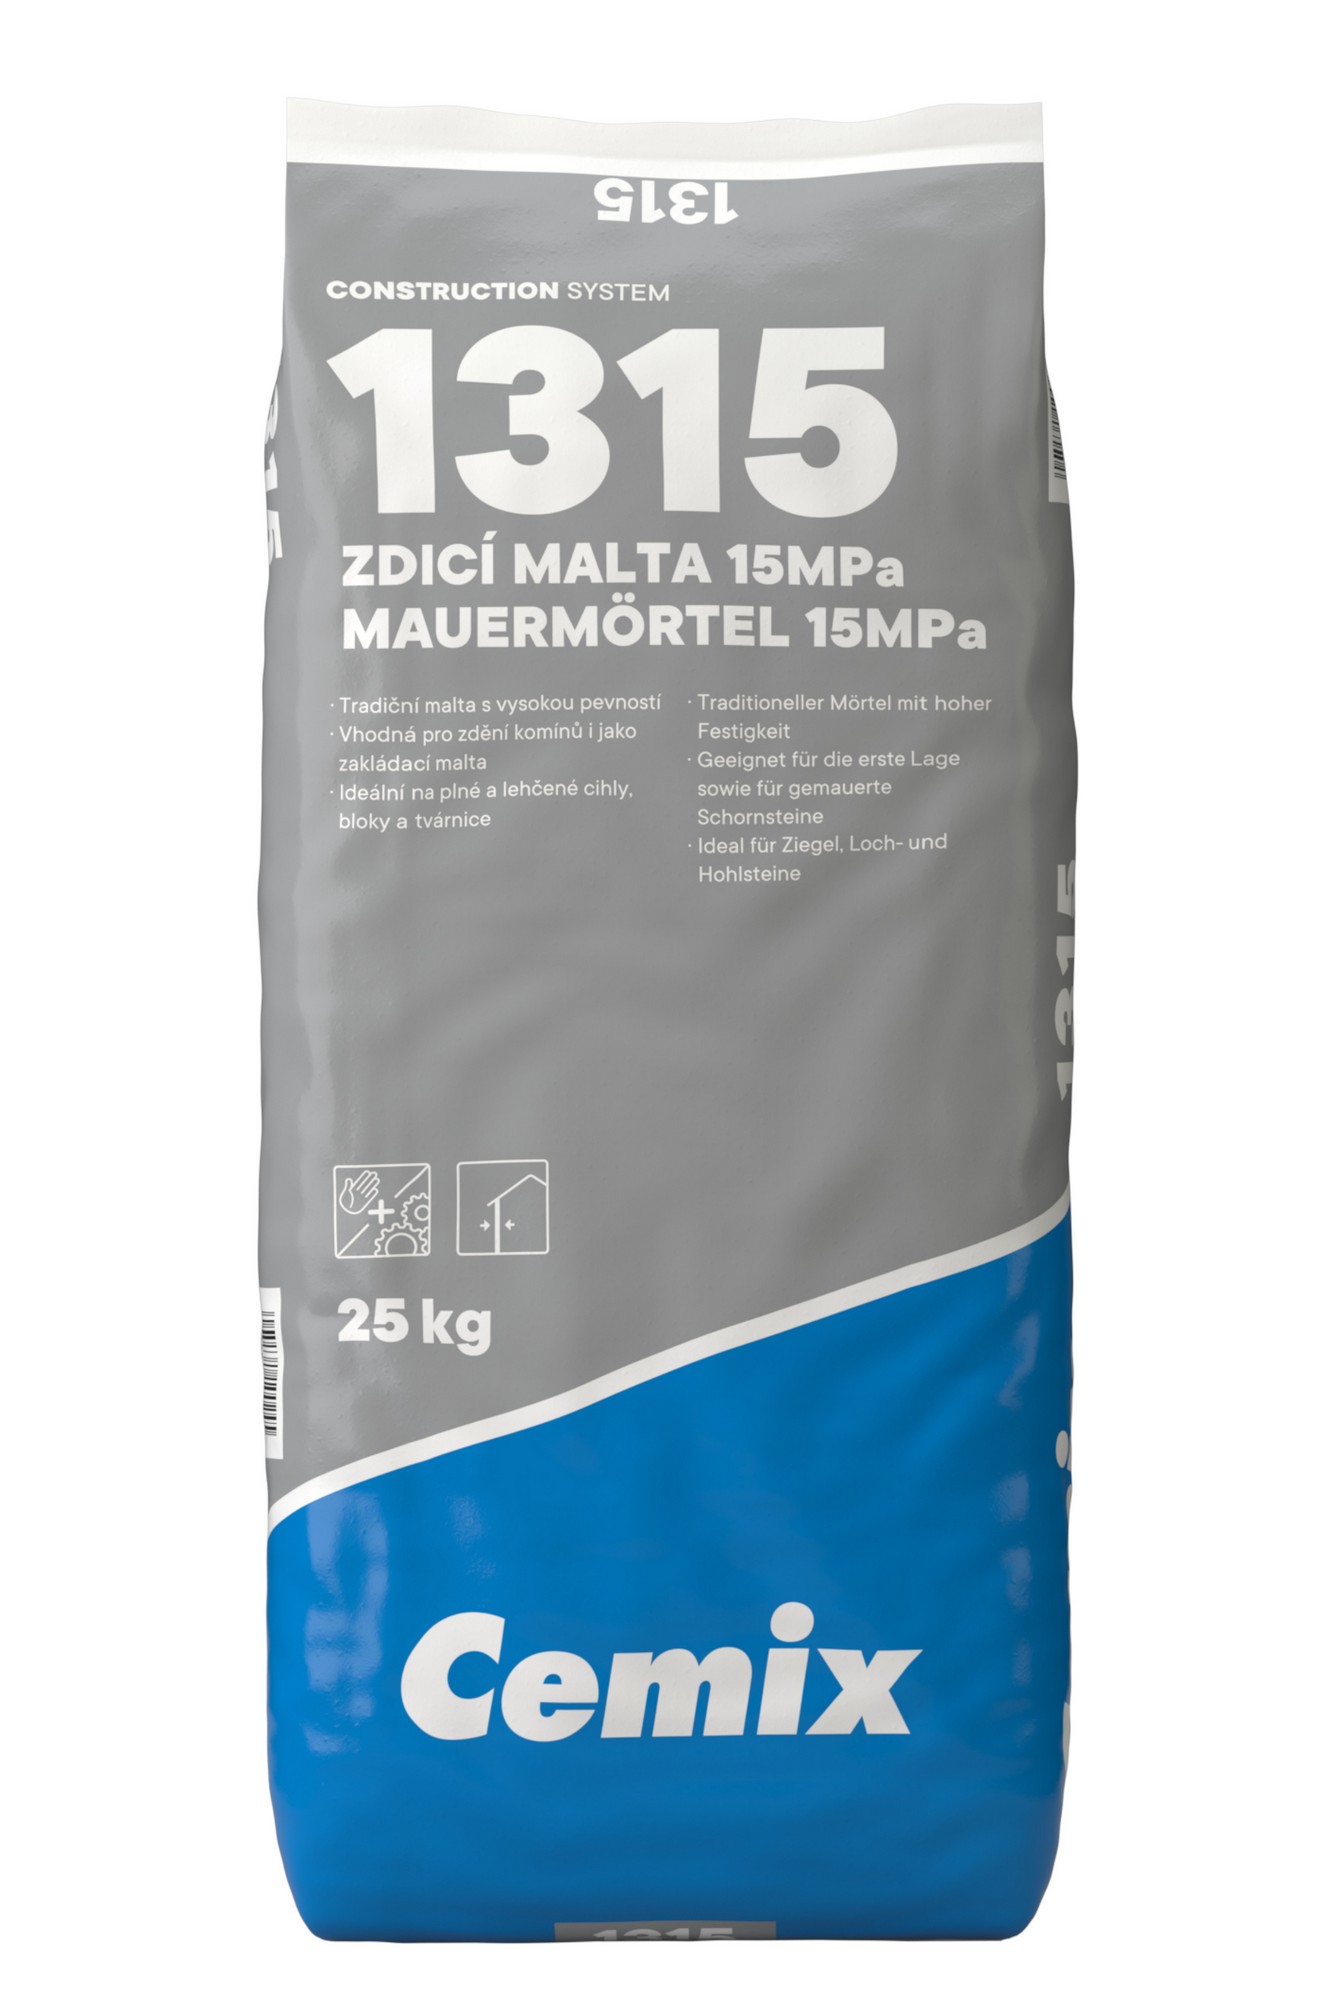 Malta zdicí 15 MPa Cemix1315 25 kg